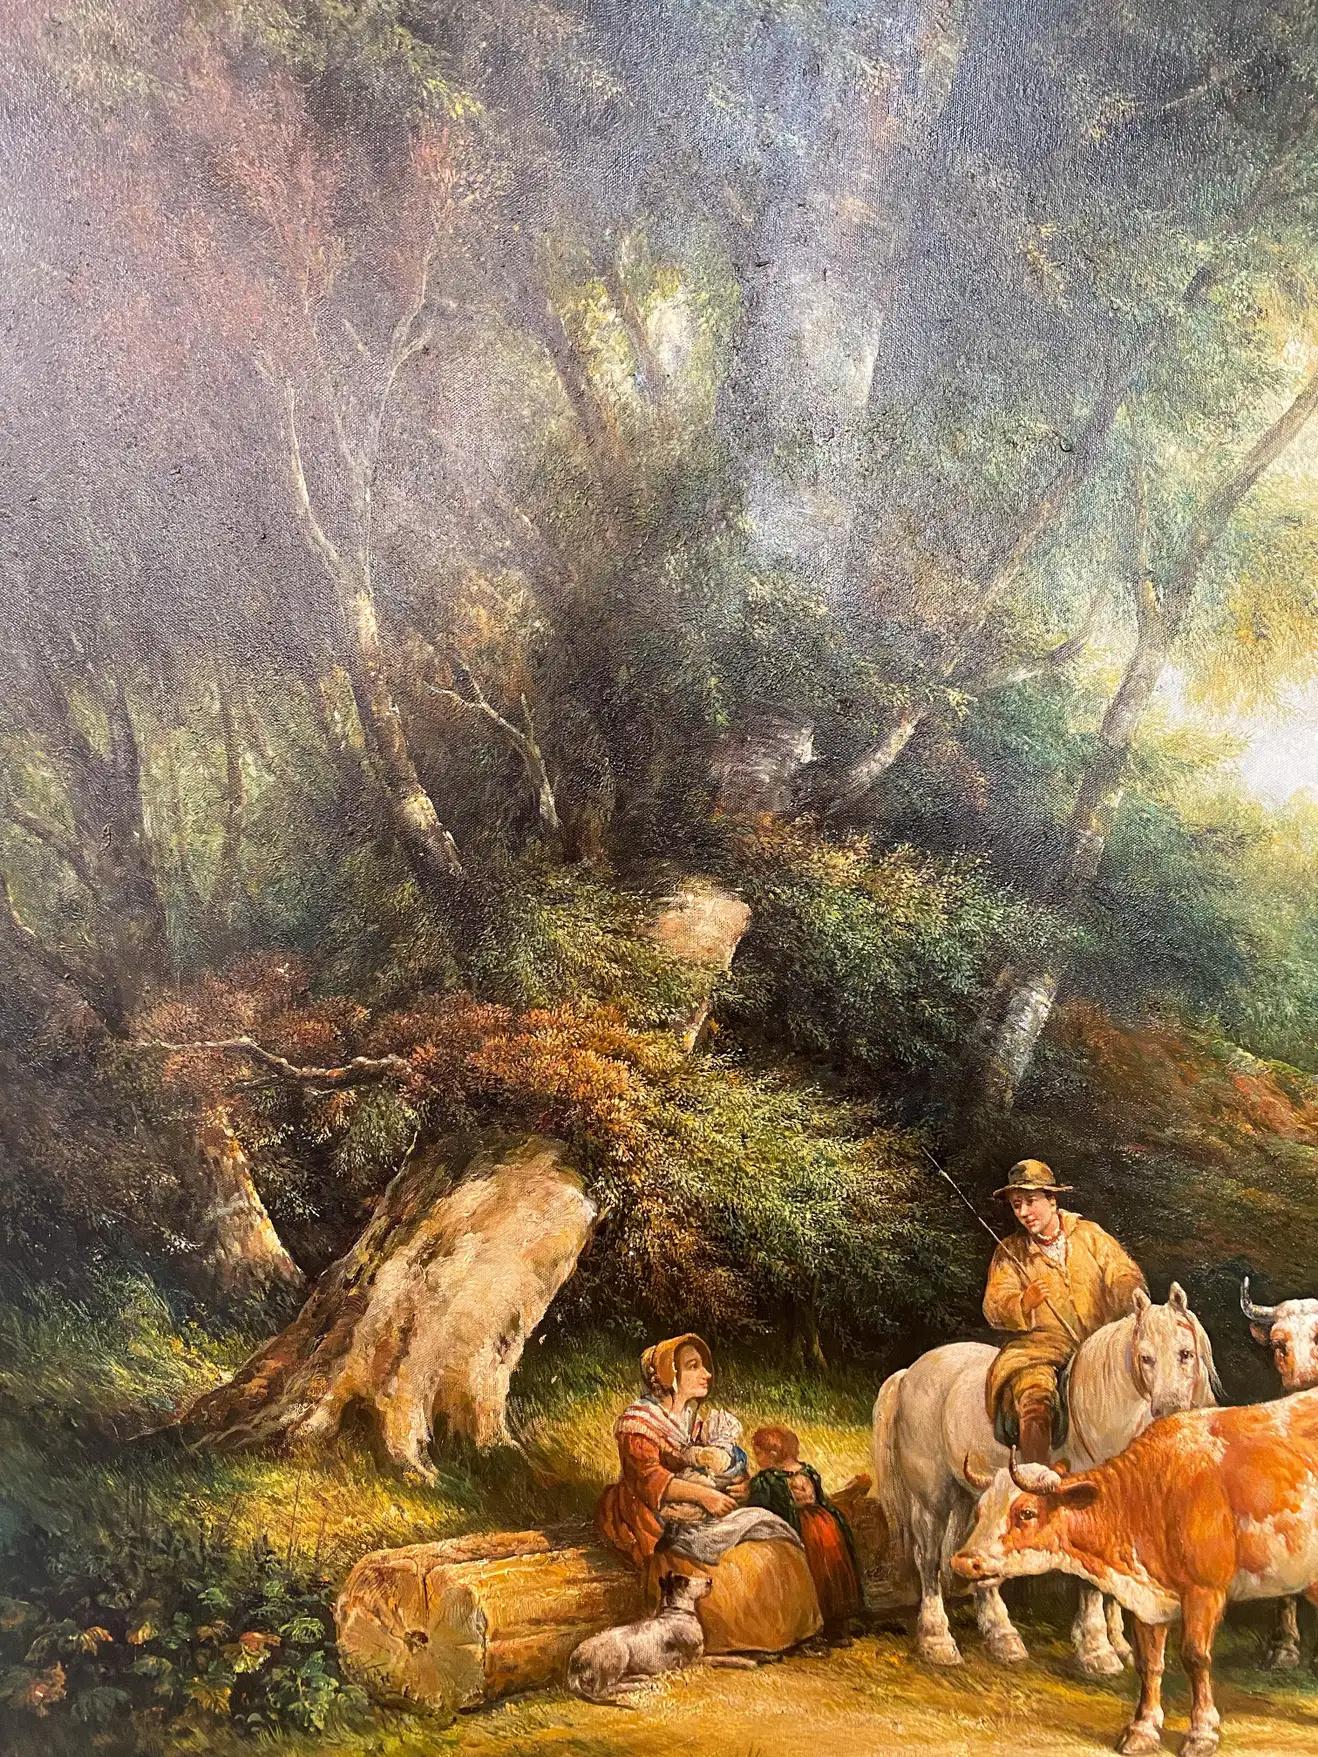 Une grande peinture impressionniste exquise de fermiers avec du bétail à la manière de Julius Paul Junghanns (allemand, 1876-1958). La peinture représente une famille de fermiers avec leur chien et leur bétail se reposant au milieu des bois entourés